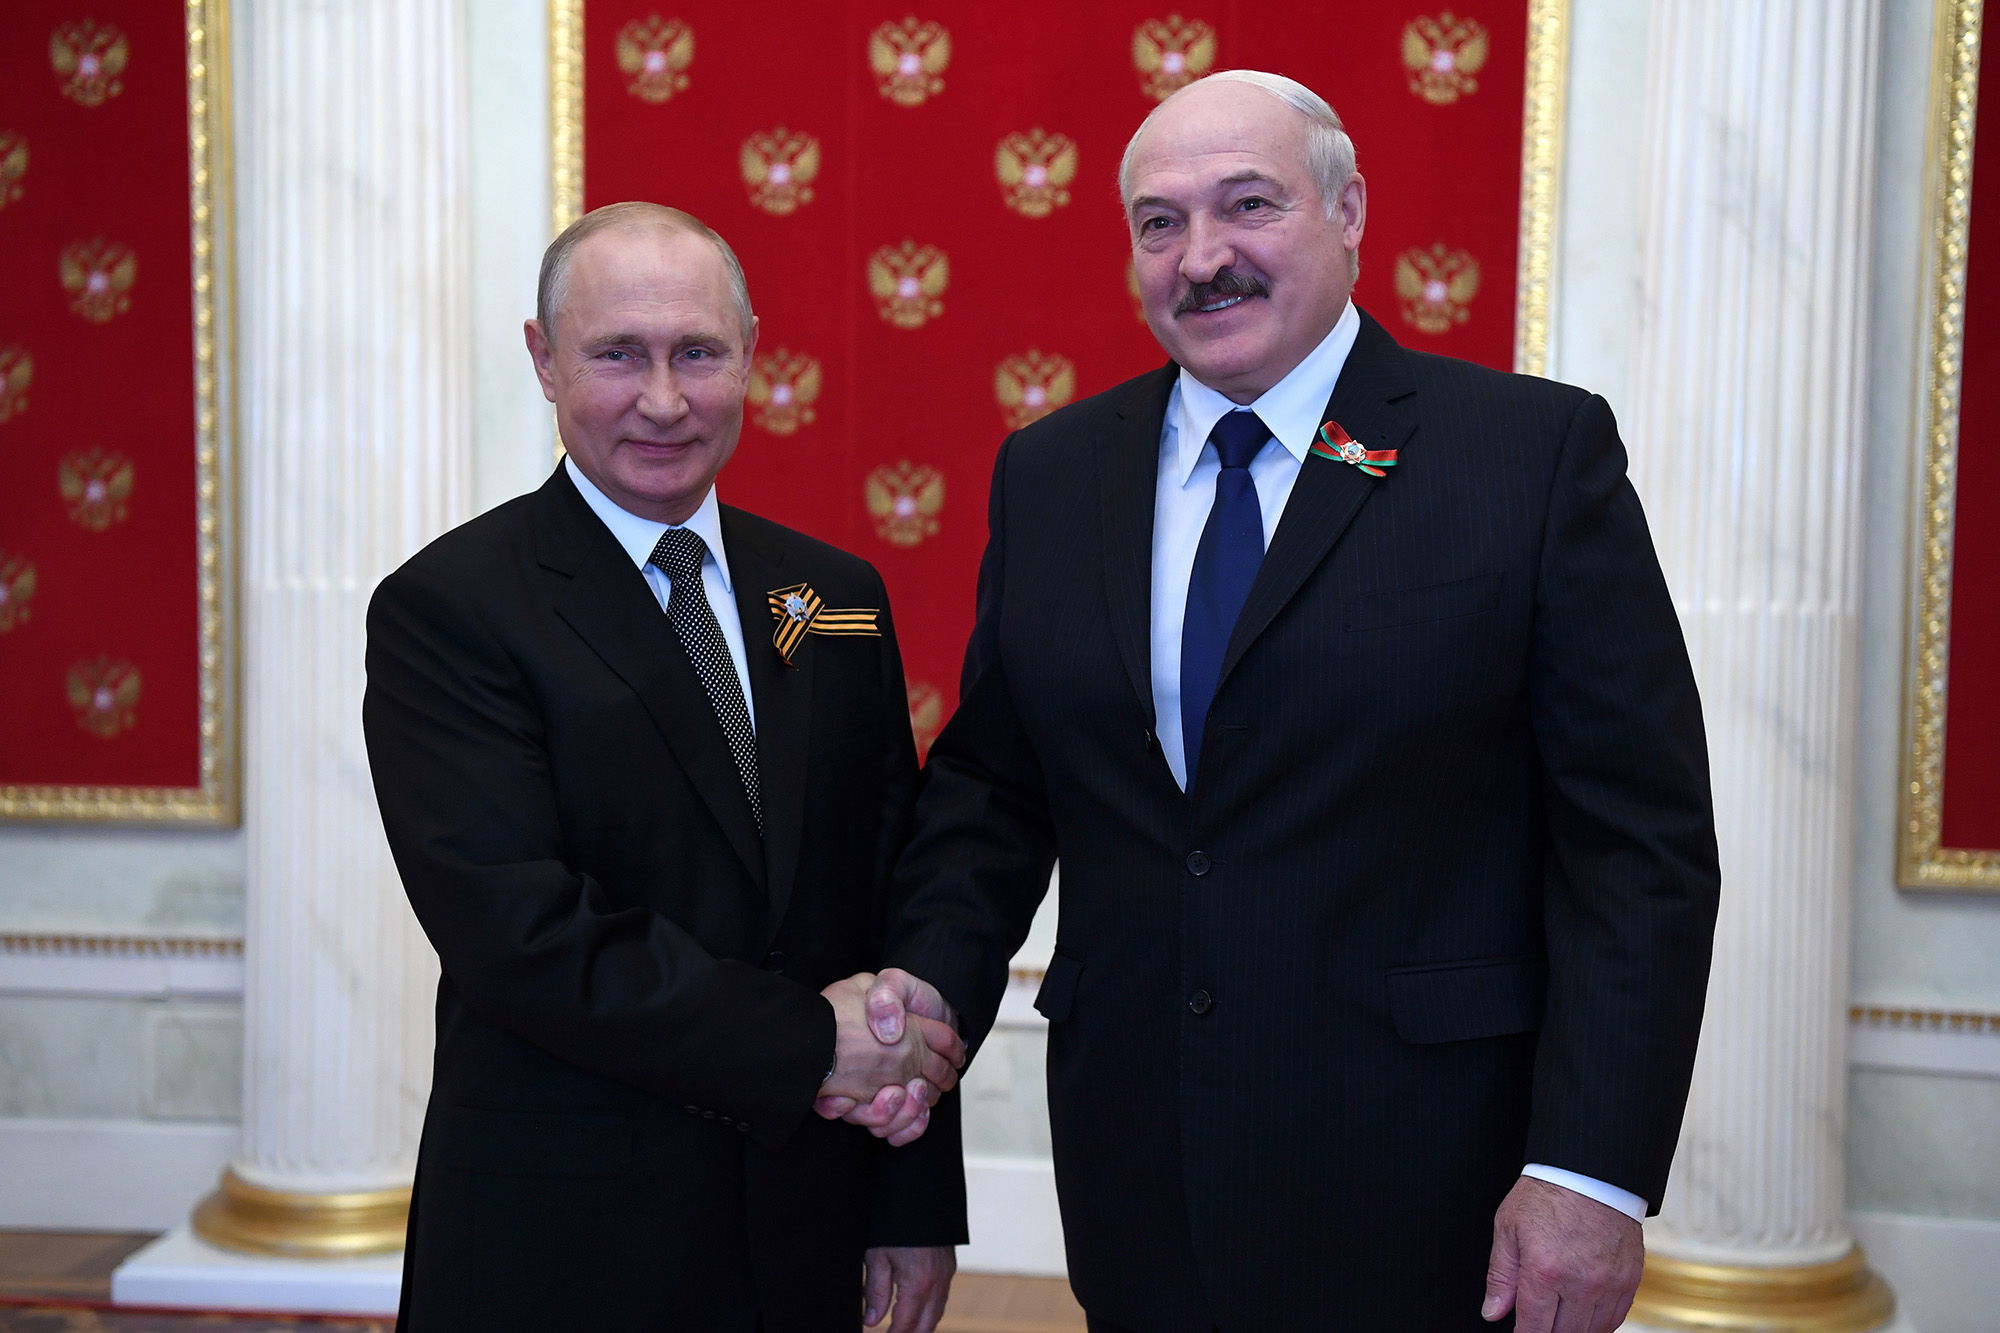 El presidente ruso Vladimir Putin (izquierda) y el presidente bielorruso Alexander Lukashenko se dan la mano mientras posan para una foto durante una ceremonia en el Kremlin, Moscú, Rusia, el 24 de junio de 2020.